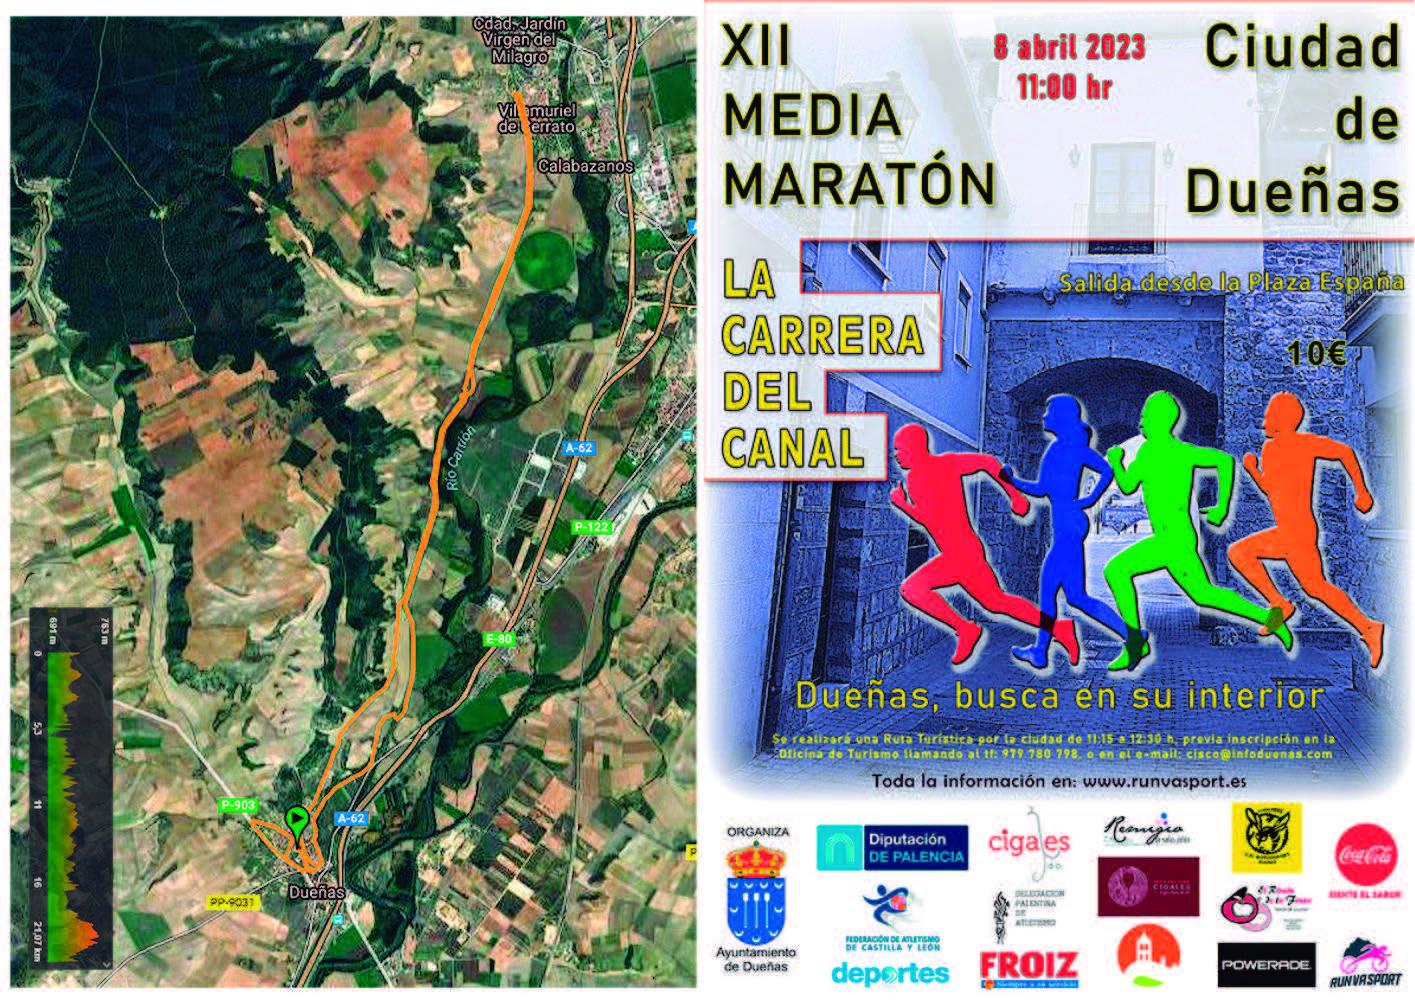 XII Media Maratón - La Carrera del Canal1